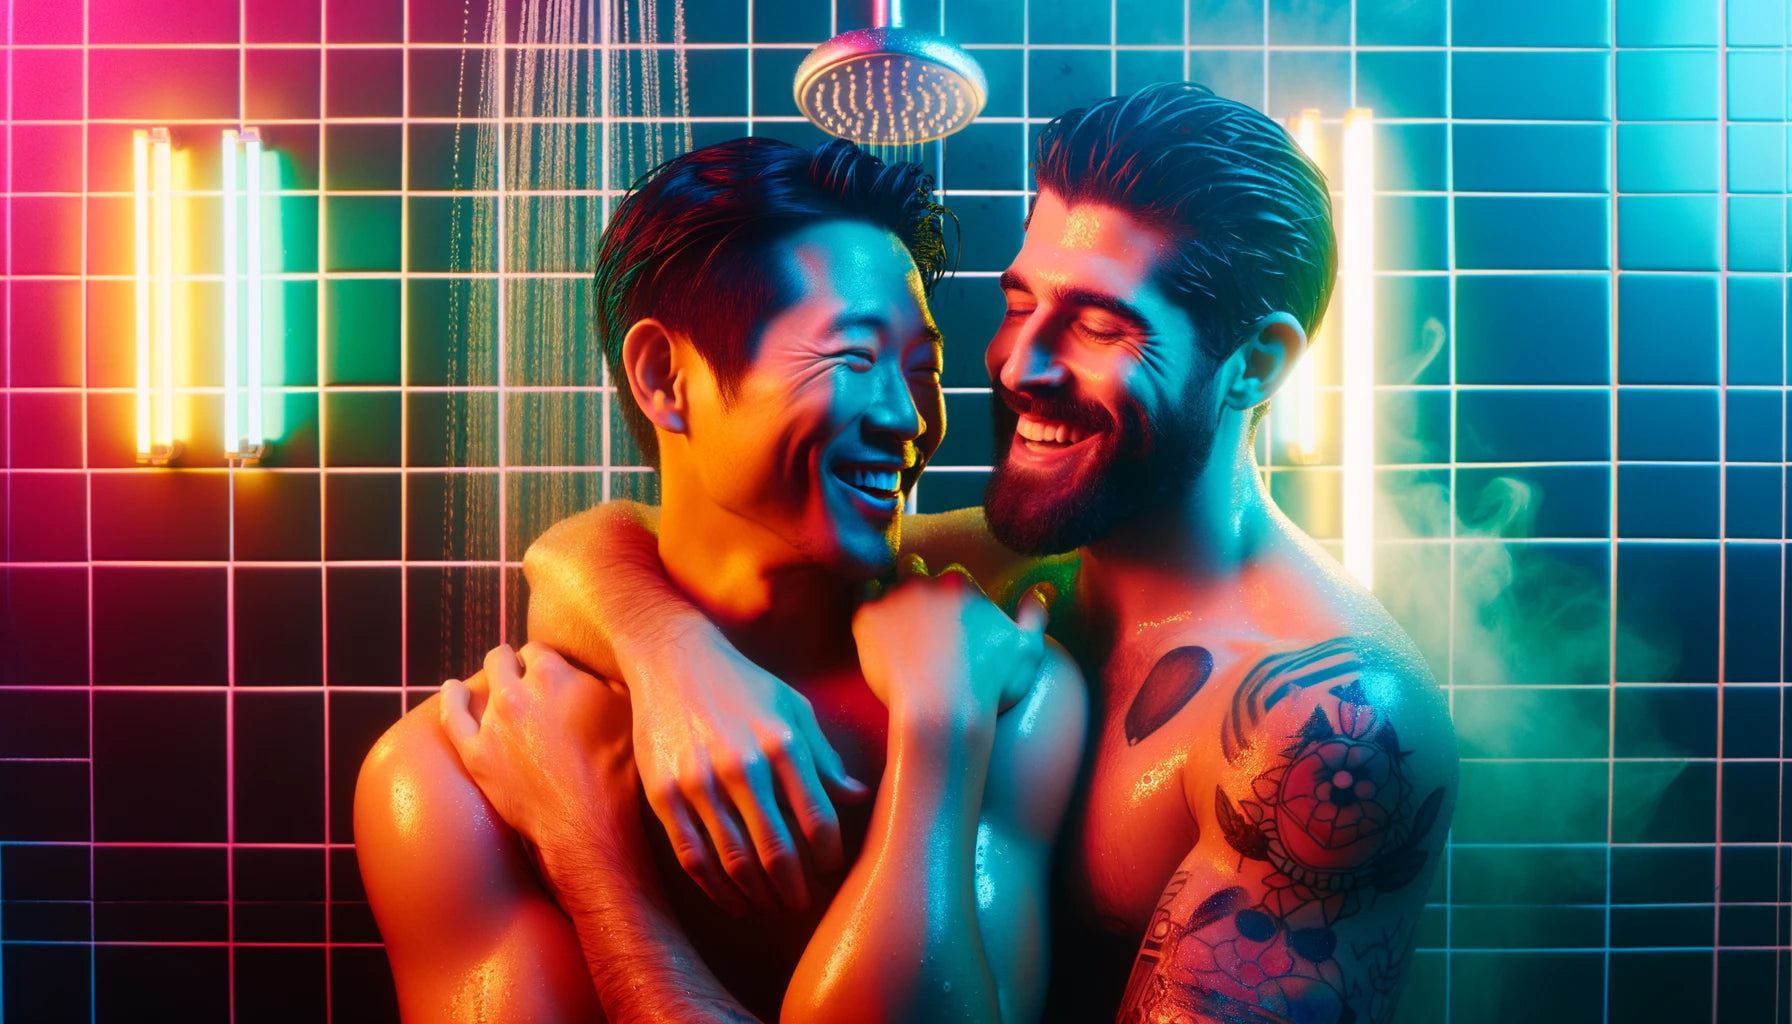 Conto Erótico Duelo de Espadas. Imagem criada por IA de dois homens tomando banho juntos.